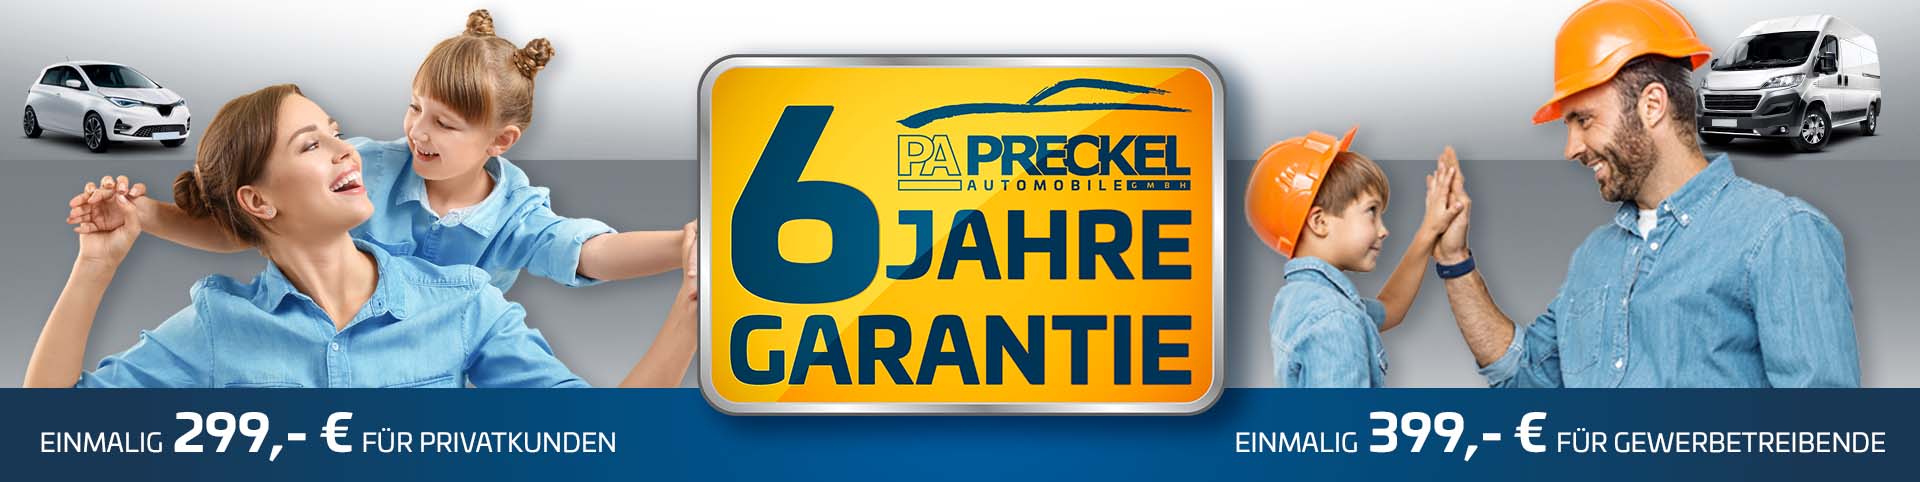 Die 6 Jahres Garantie von Preckel Automobile